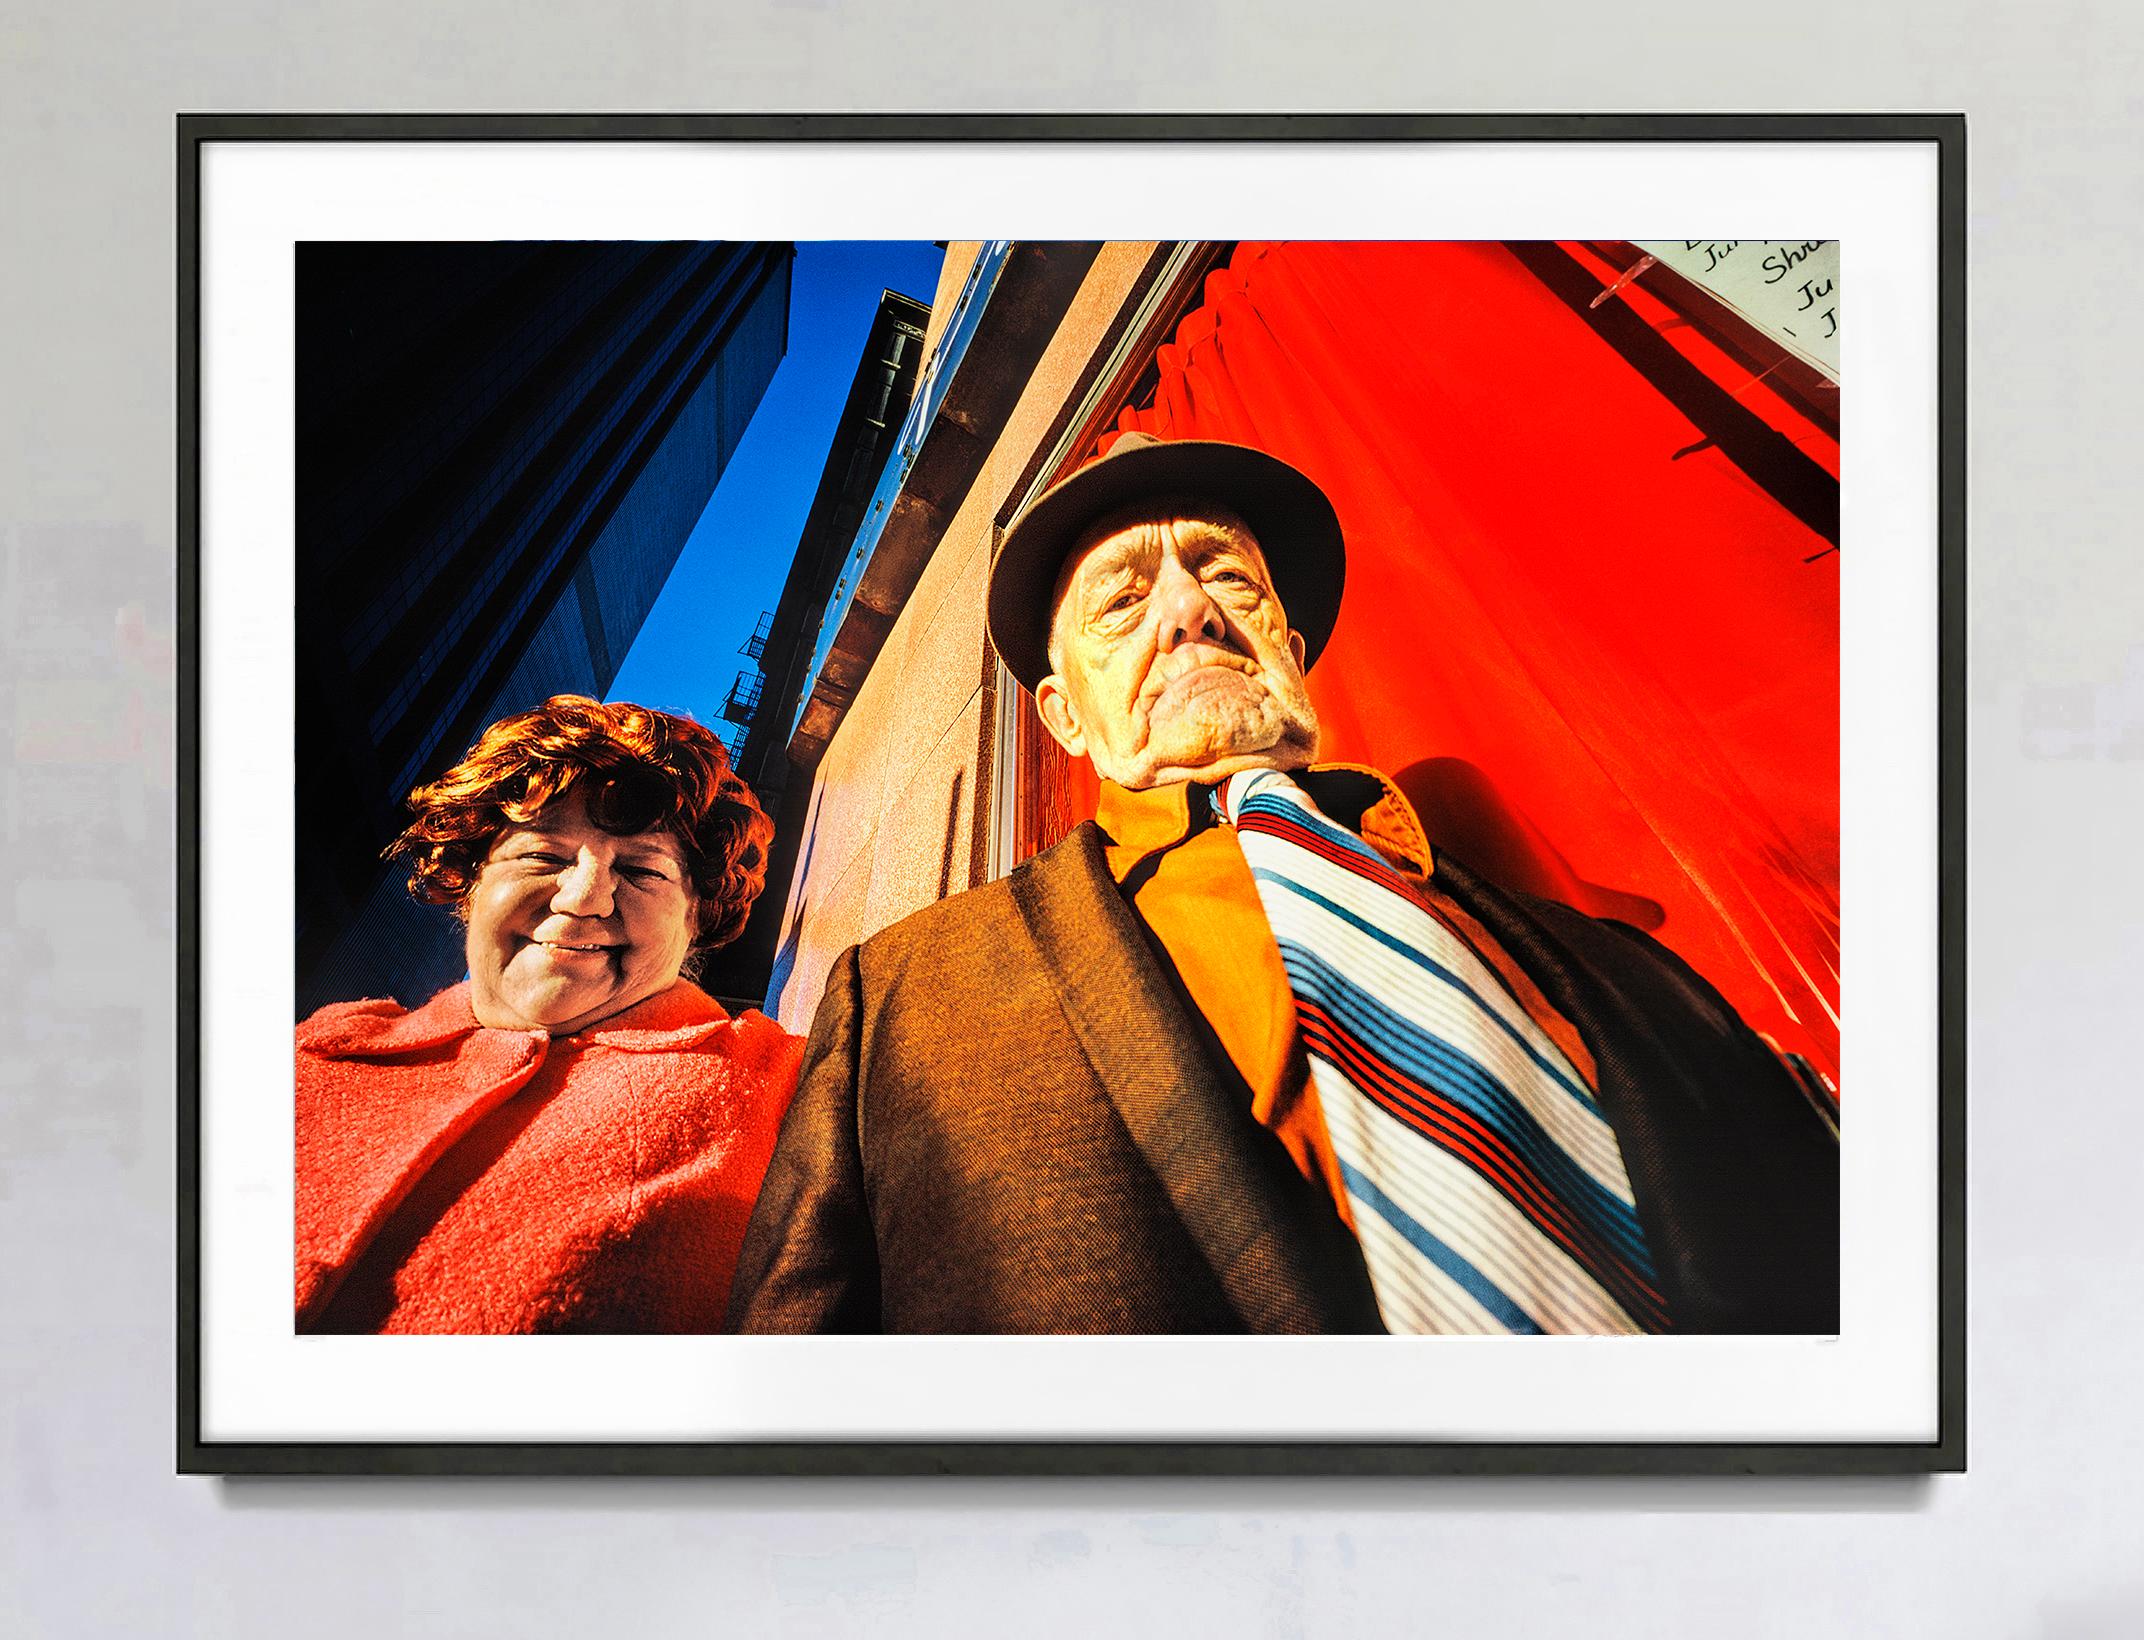 Frühes Ehepaar und Ehefrau, Gruppenporträt vor einer roten Wand in Manhattan – Photograph von Mitchell Funk